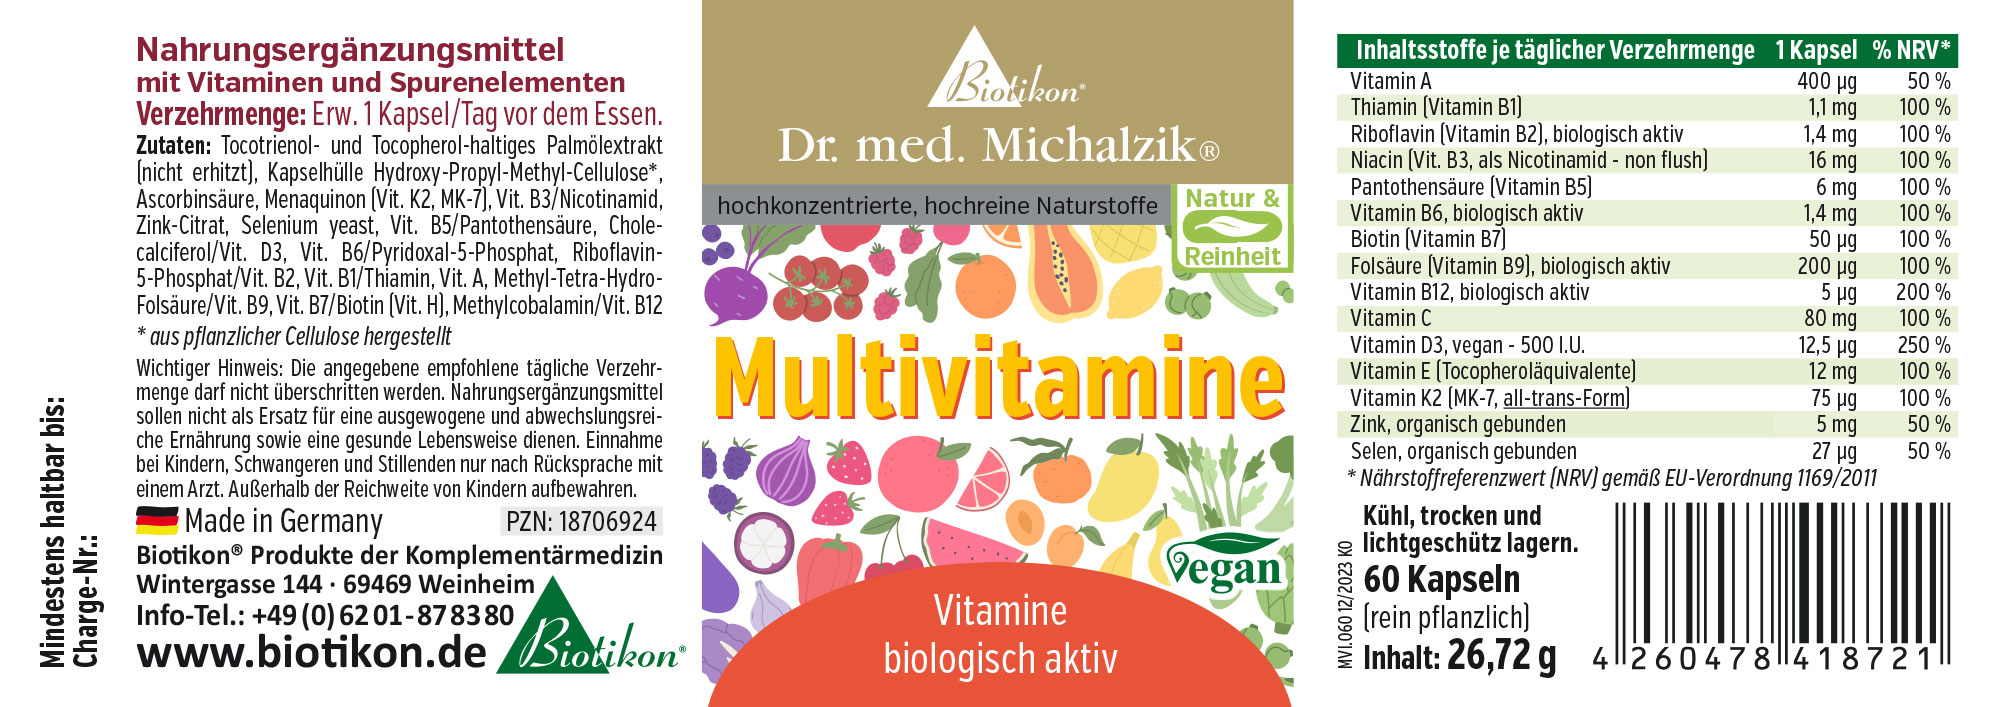 Multivitamins by Dr. med. Michalzik